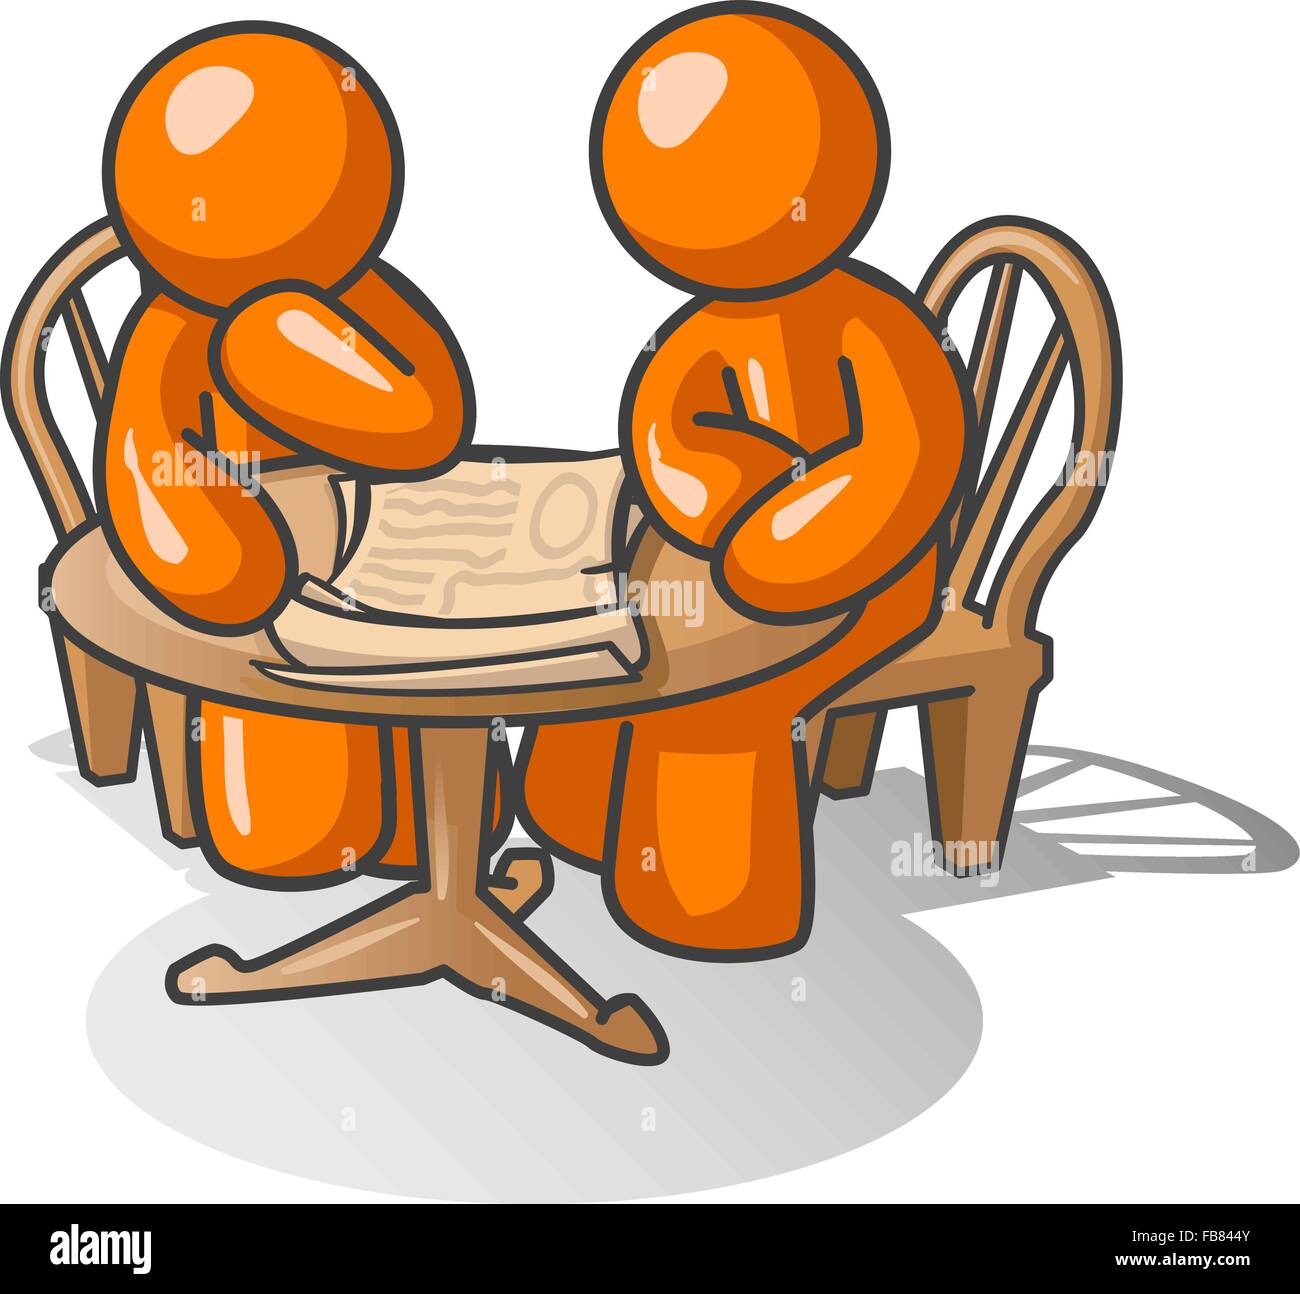 Zwei orange Männer an einem Holztisch, ein Problem gemeinsam nachdenken. Stock Vektor